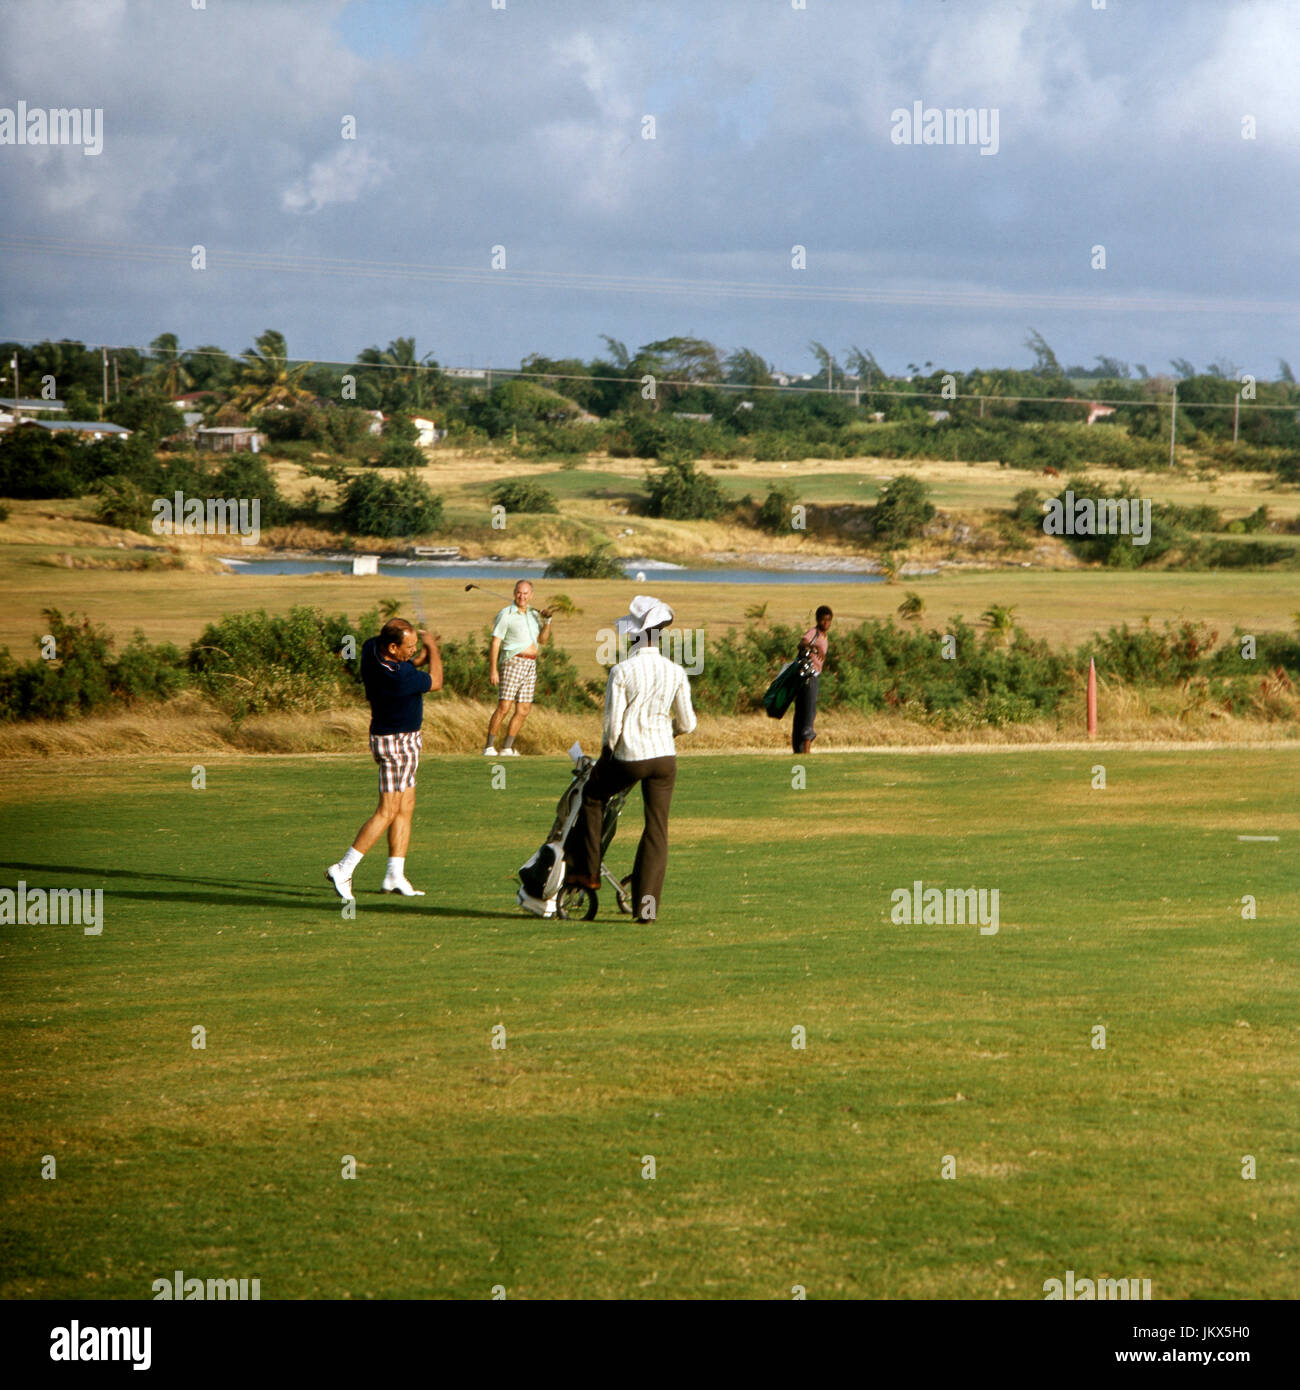 Feines Vergnügen: Golfplatz auf der Insel Barbados, 1980er Jahre. Playing golf at Barbados, 1980s. Stock Photo